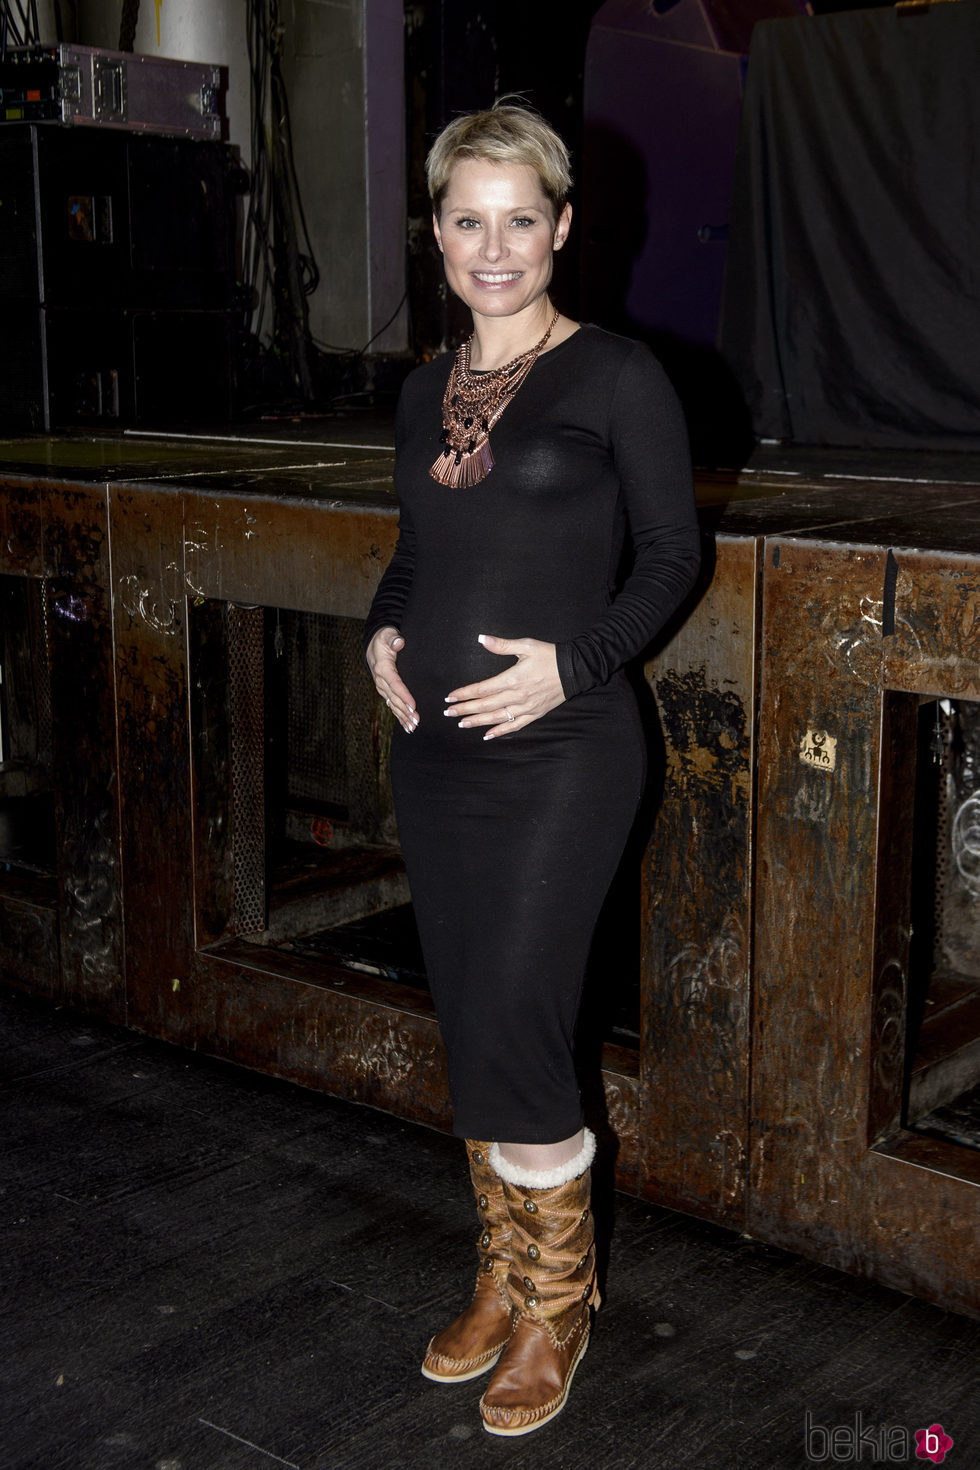 Soraya luciendo embarazo en los ensayos de su último concierto antes de ser madre